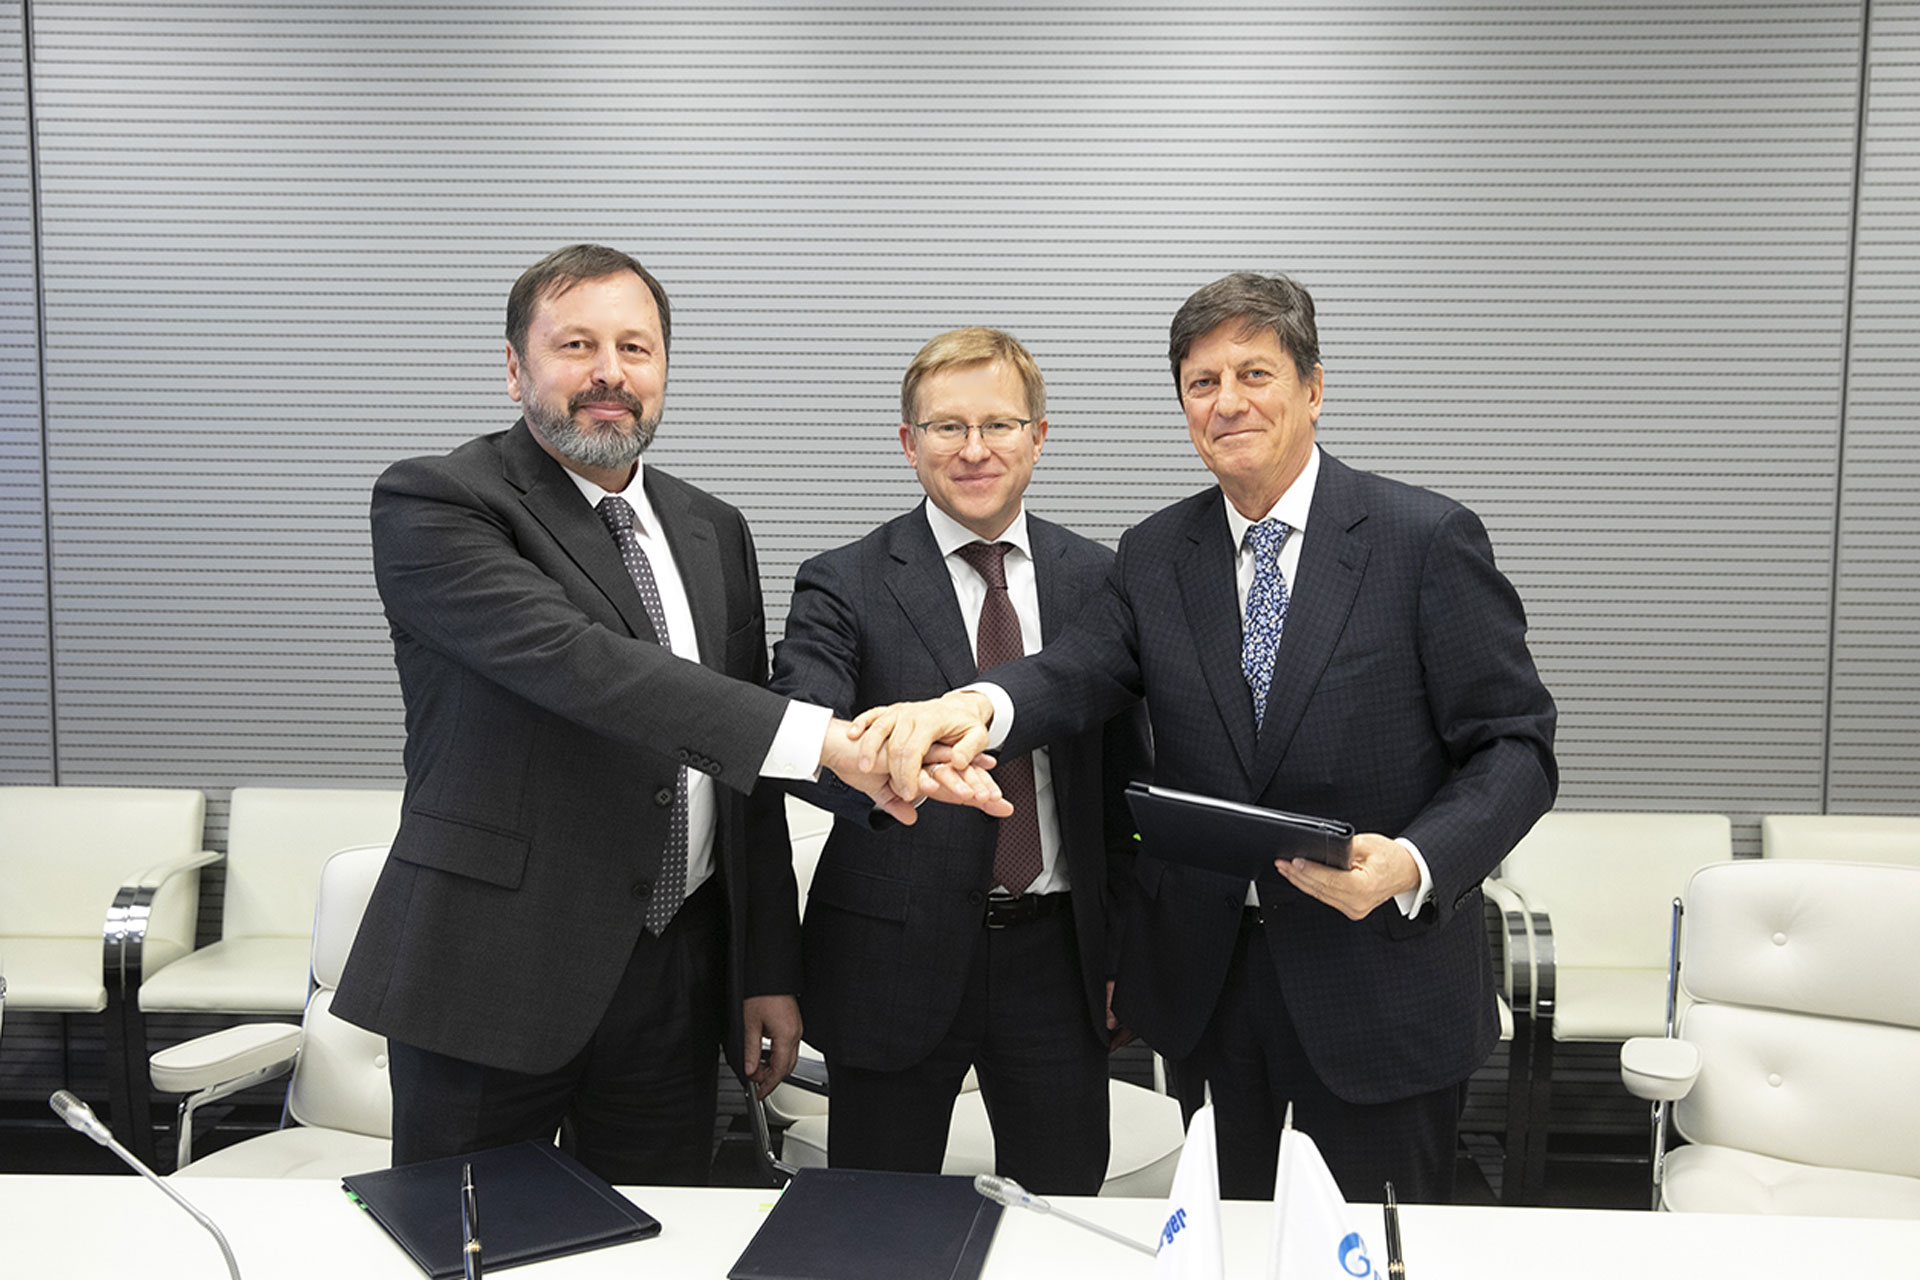 Podpisanie umowy Gazprom Nieft-Schlumberger. Fot. Gazprom Nieft